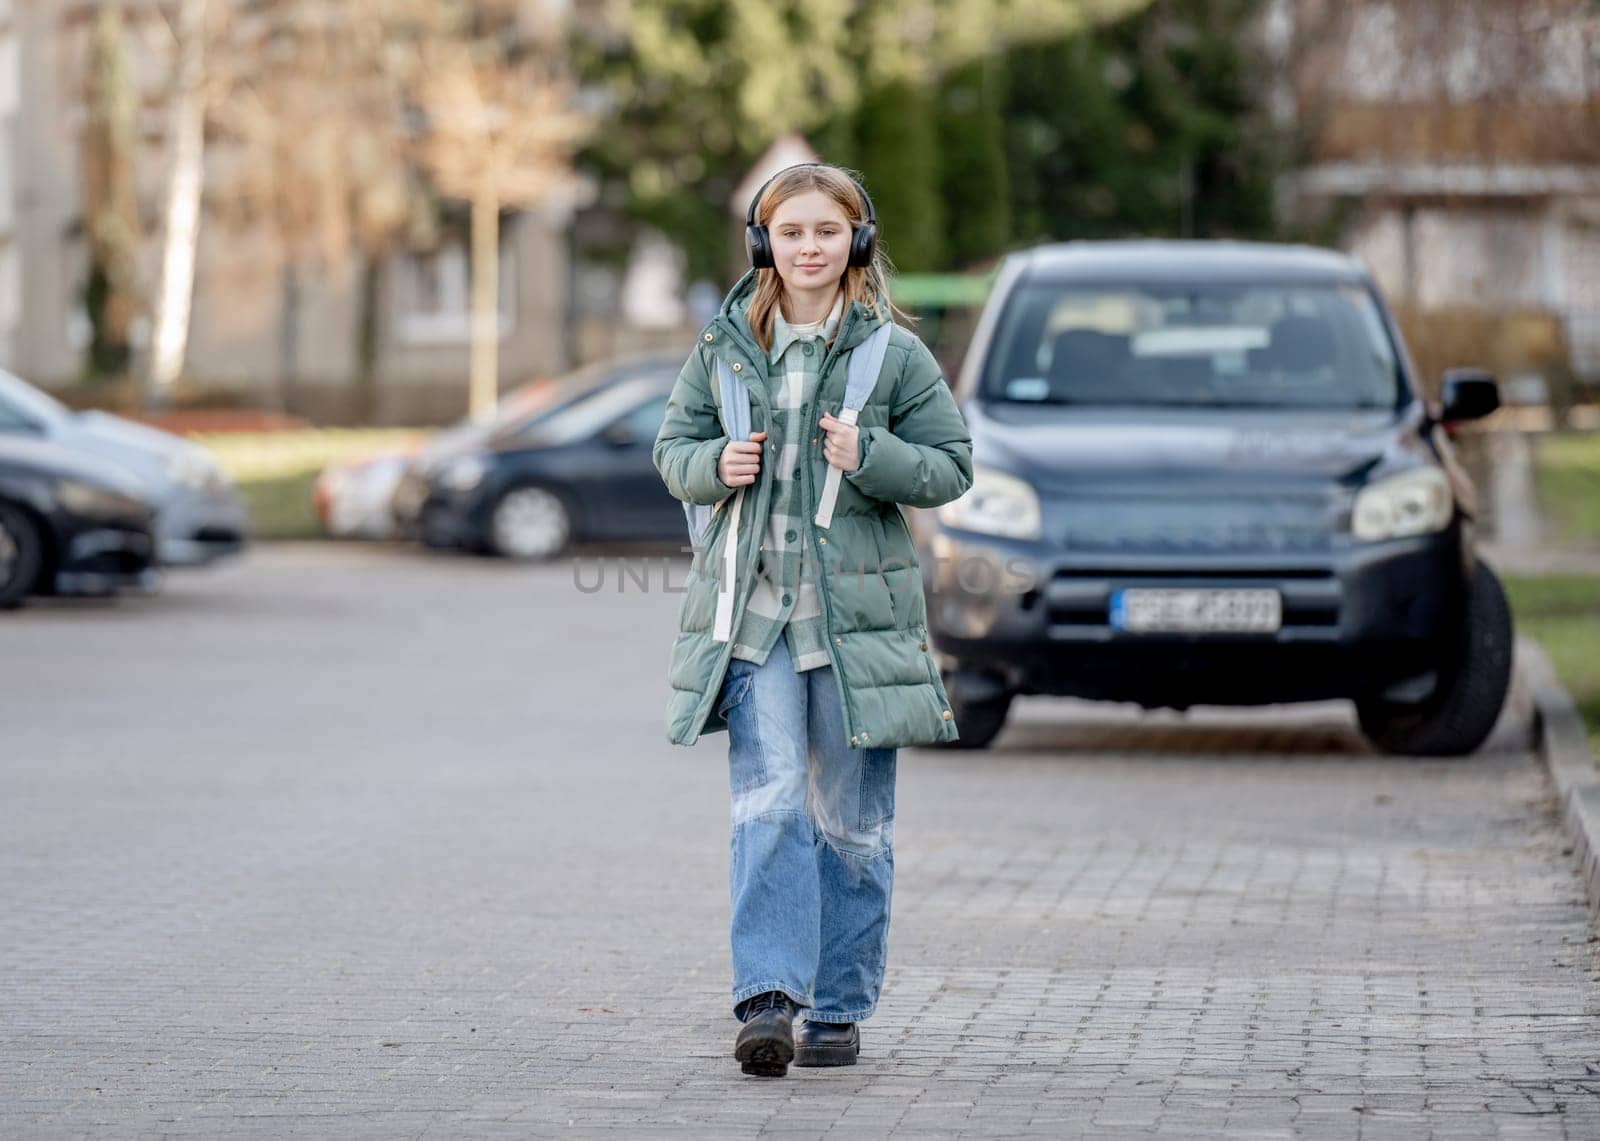 Cute Girl Walks Down Street In Spring, Listening To Music In Headphones by tan4ikk1